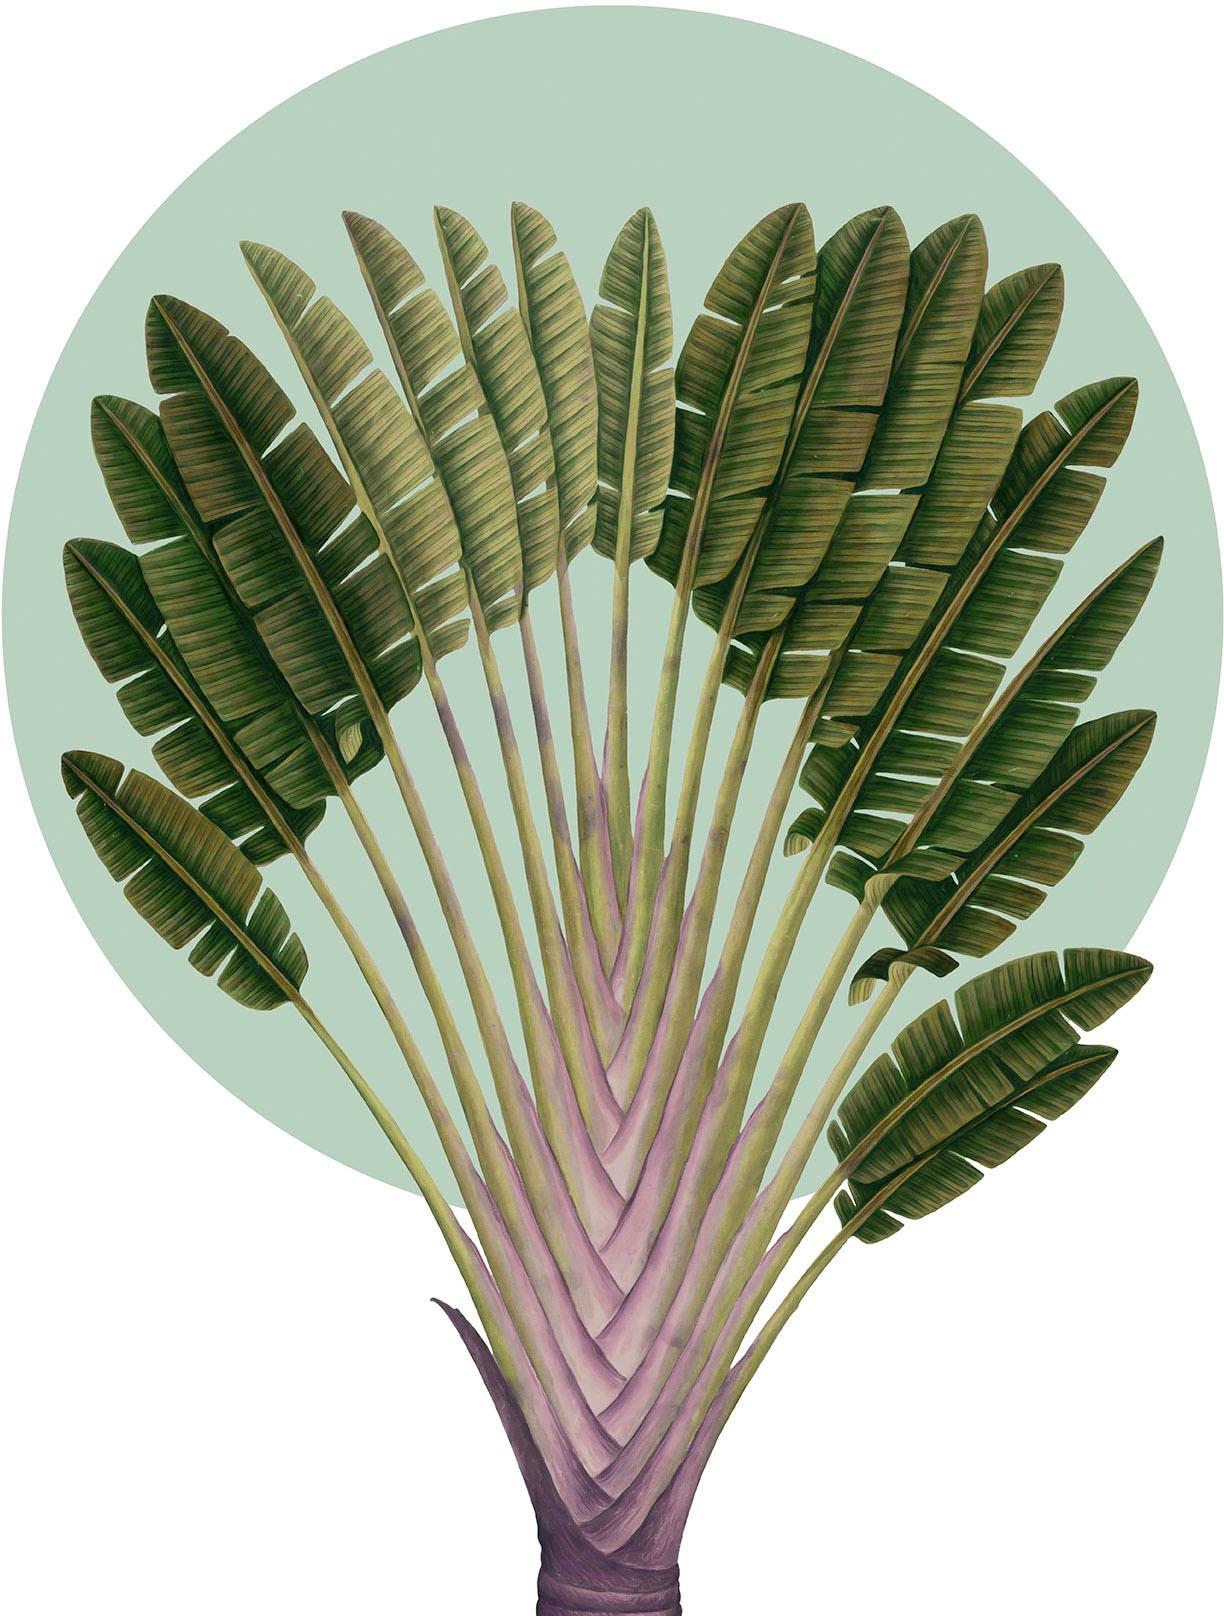 Komar Wandbild »Botanical Garden Pinnate Palm«, (1 St.), Deutsches Premium-Poster Fotopapier mit seidenmatter Oberfläche und hoher Lichtbeständigkeit. Für fotorealistische Drucke mit gestochen scharfen Details und hervorragender Farbbrillanz.